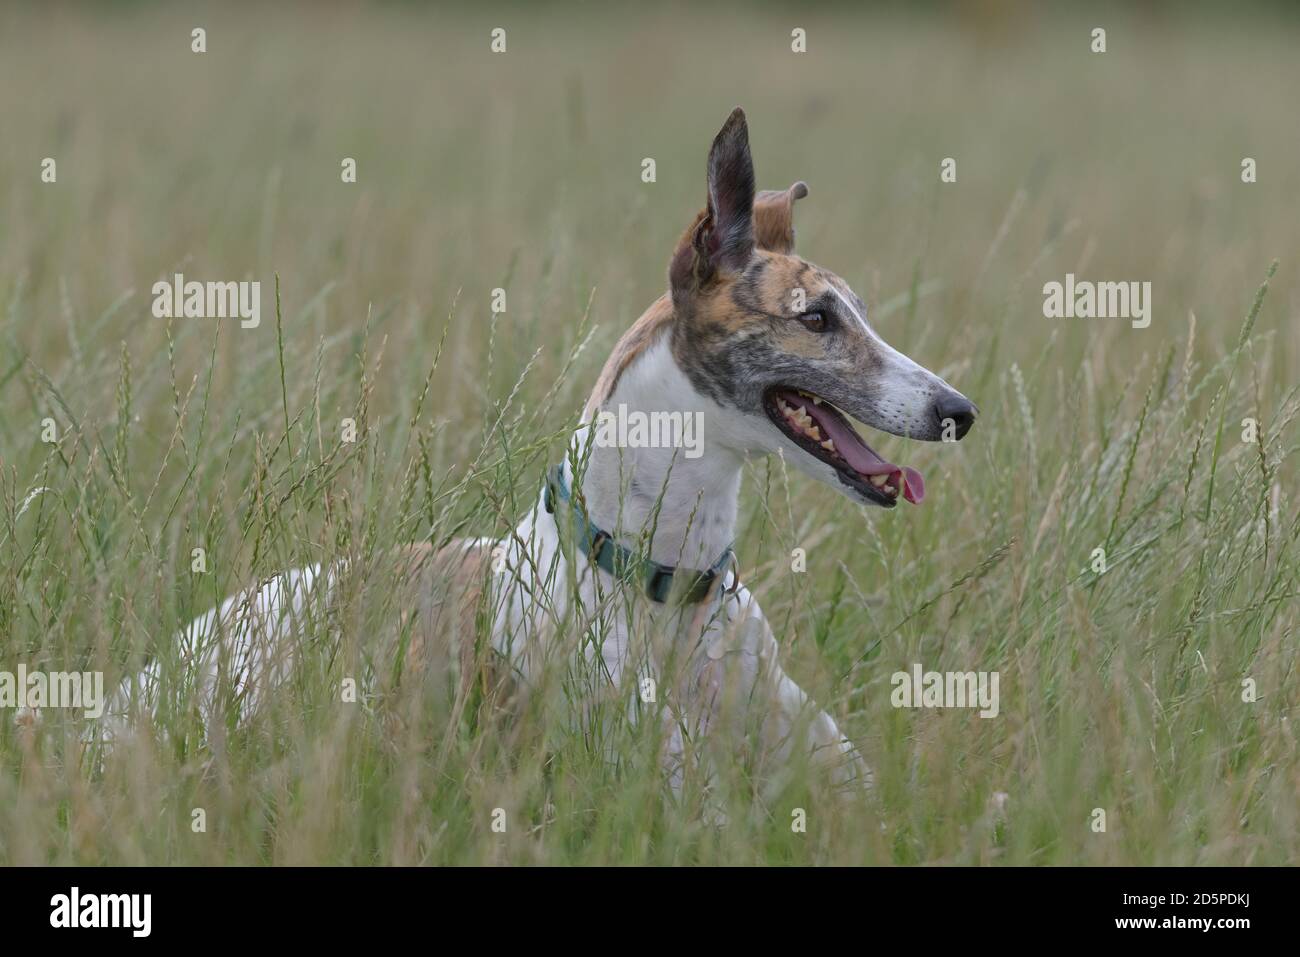 Copiez l'espace autour de l'image du corps entier d'un chien greyhound dans un champ ouvert. En regardant vers la droite et en paniquant, elle se trouve au milieu de l'herbe verte longue. Banque D'Images